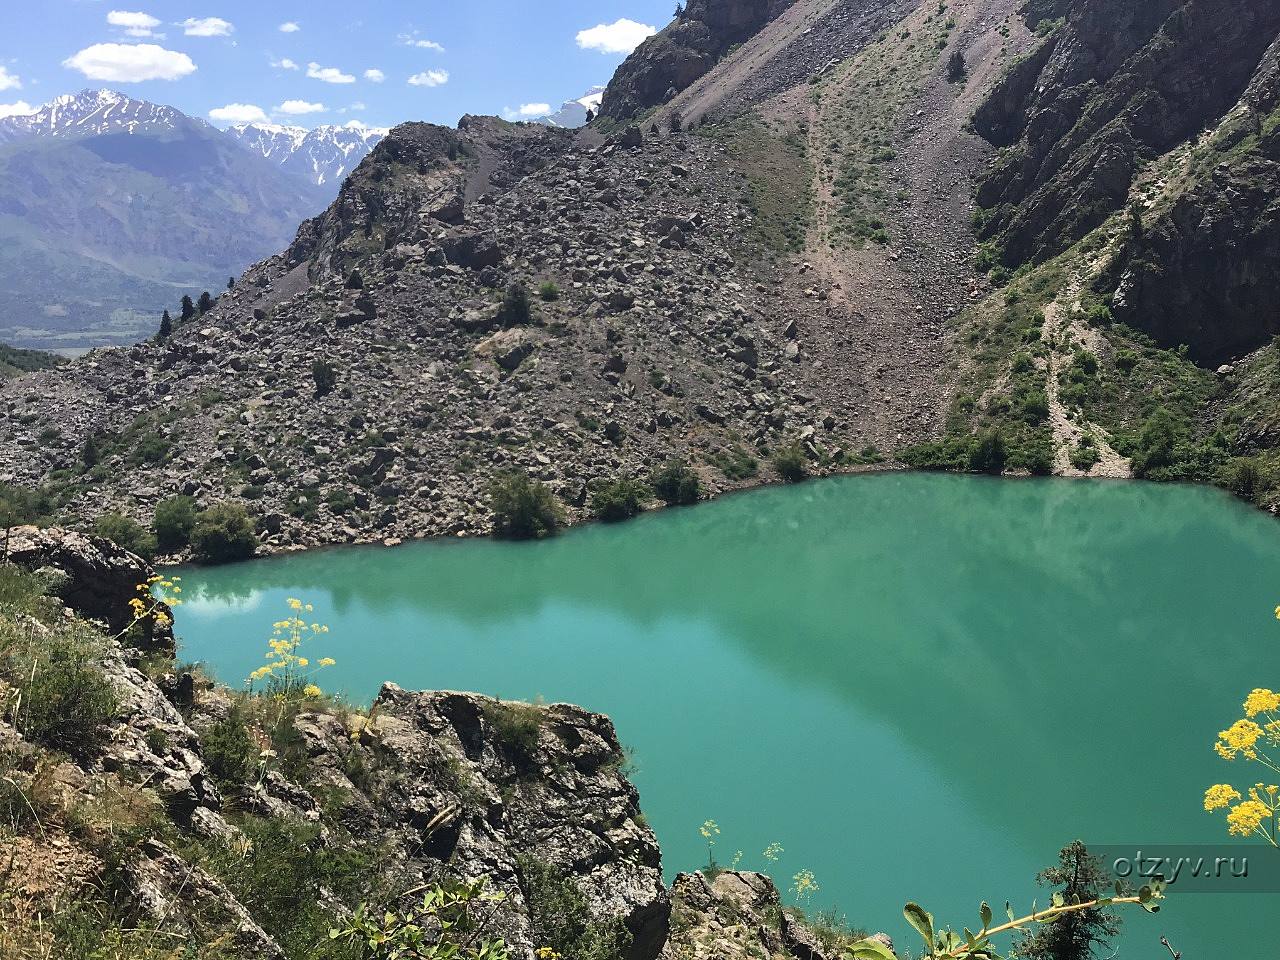 Нефритовое озеро в Ташкенте